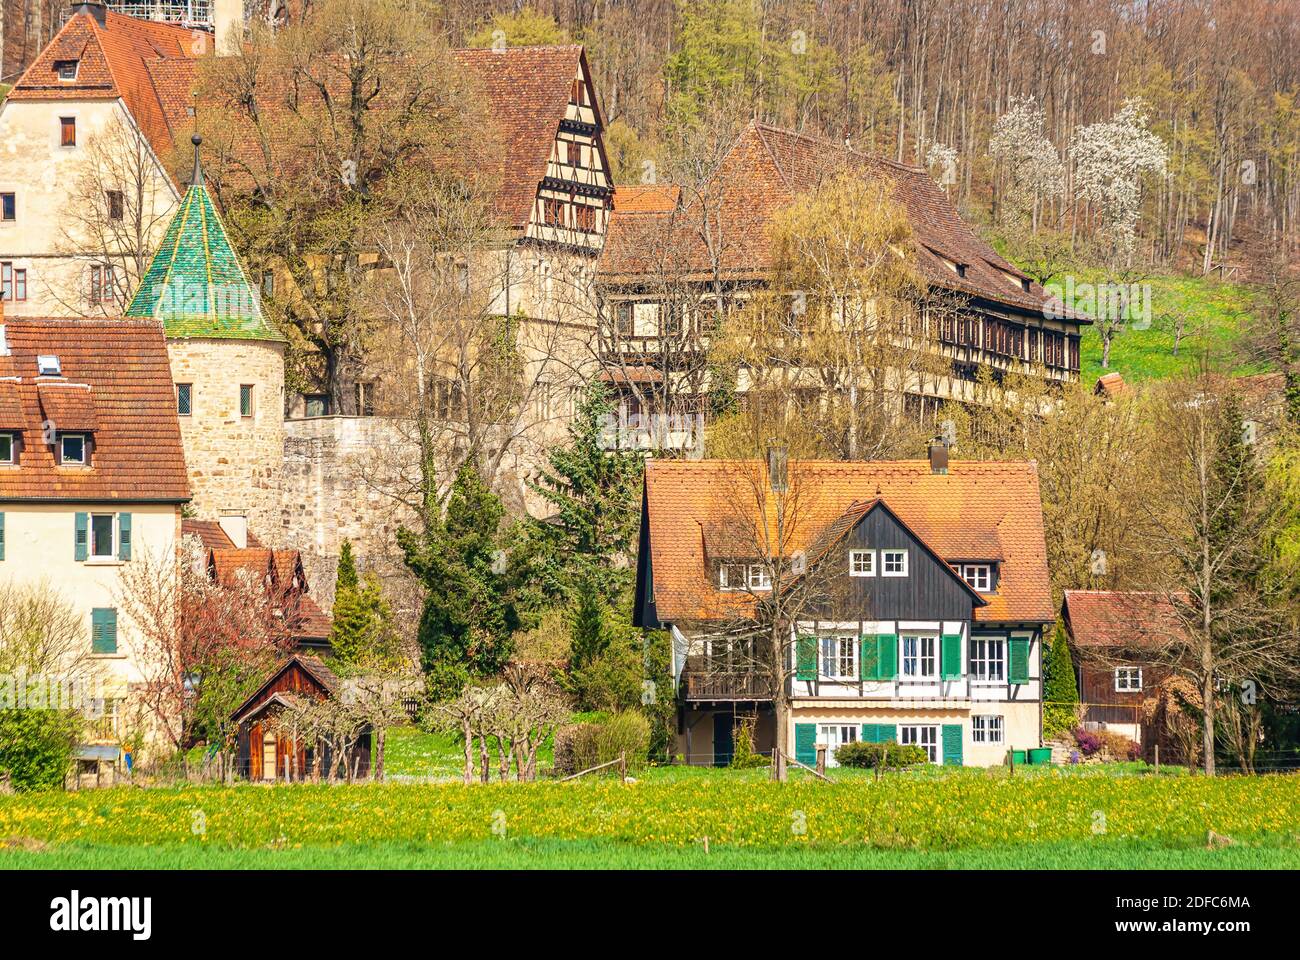 Impressioni sul villaggio e il complesso del palazzo e del monastero di Bebenhausen vicino a Tübingen, Baden-Württemberg, Germania. Foto Stock